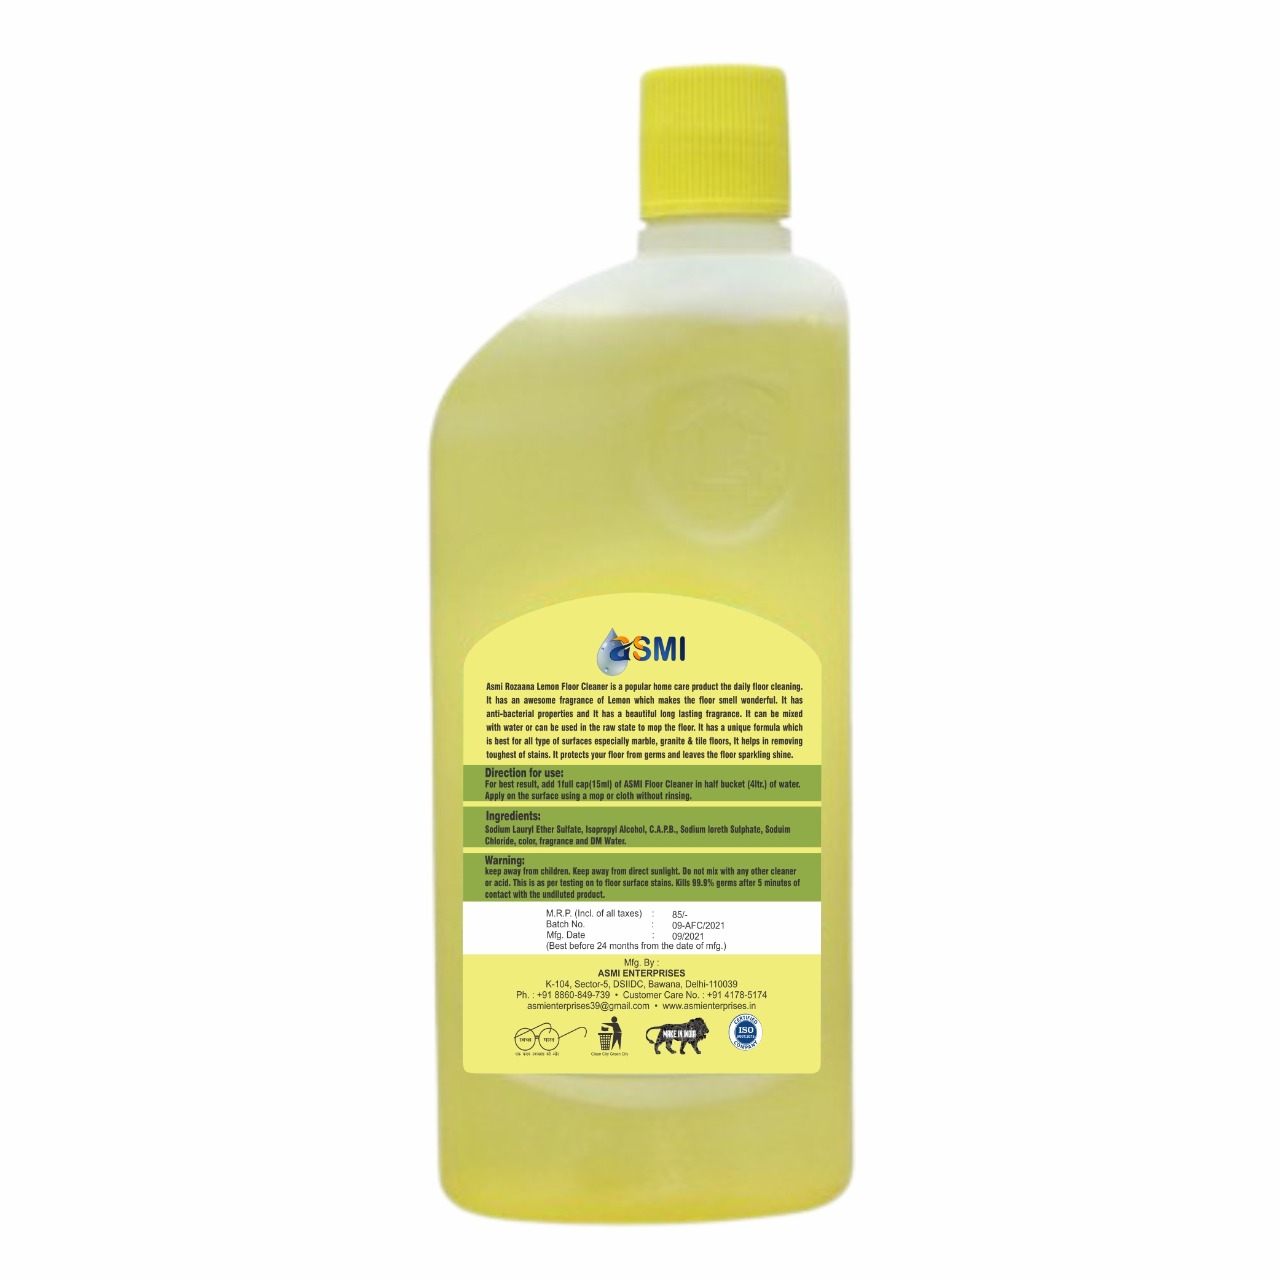 floor-cleaner-lemon-500-ml-pack-of-24-pcs